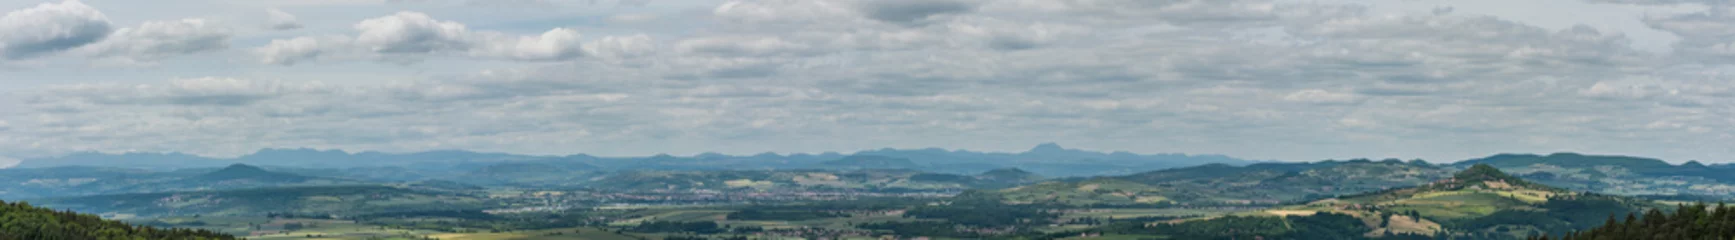 Tuinposter vue panoramique des monts d' Auvergne © PL.TH